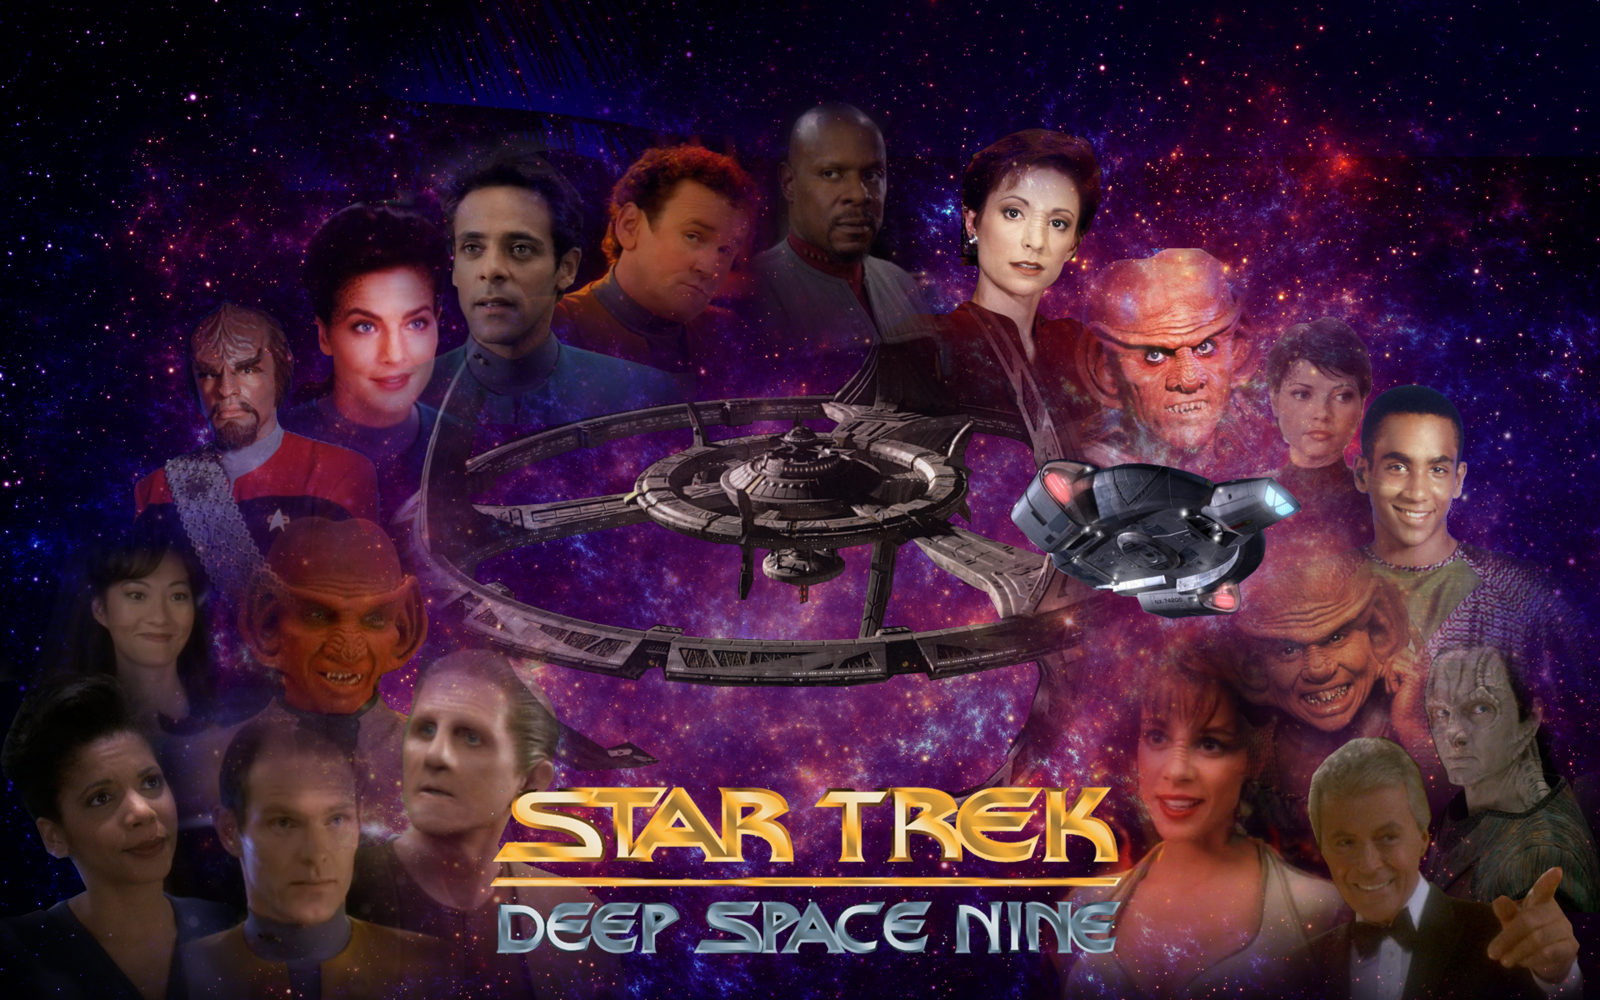 Download deep space nine season 1